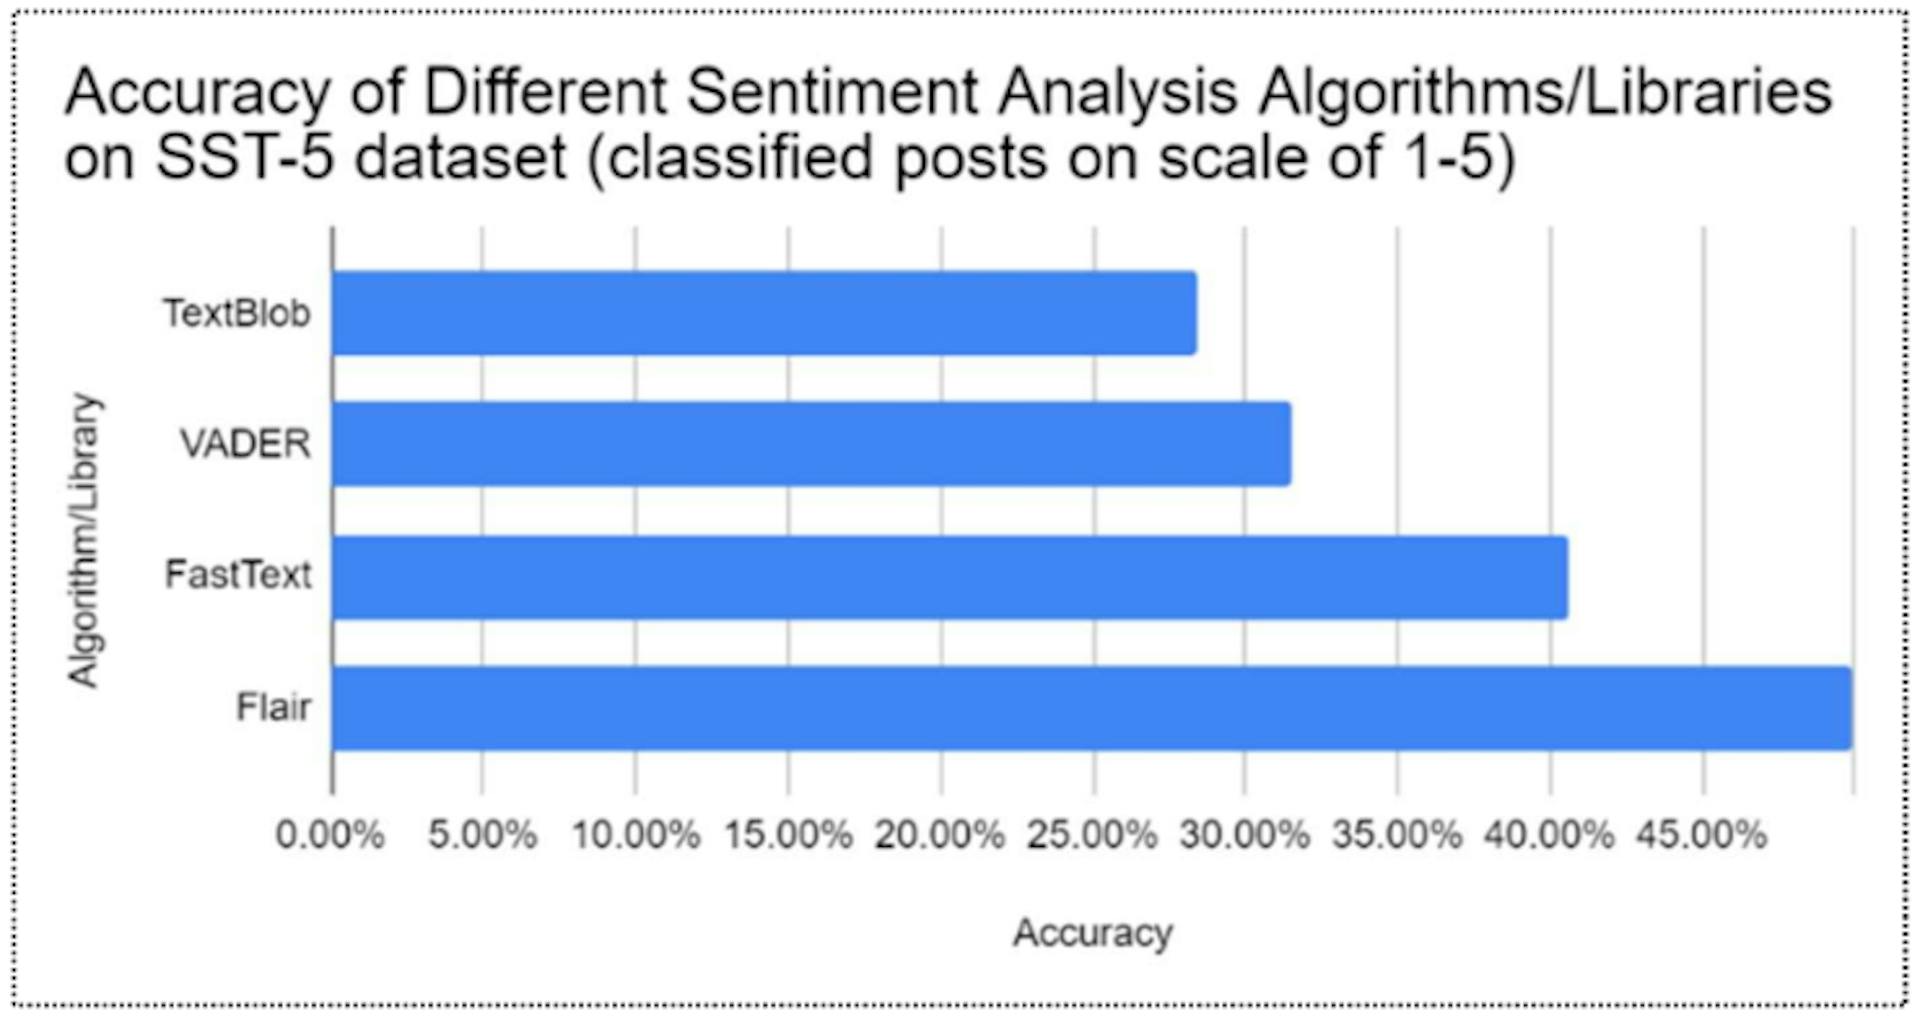 図4: SST-5データベースにおけるさまざまな感情分析アルゴリズムの精度の比較